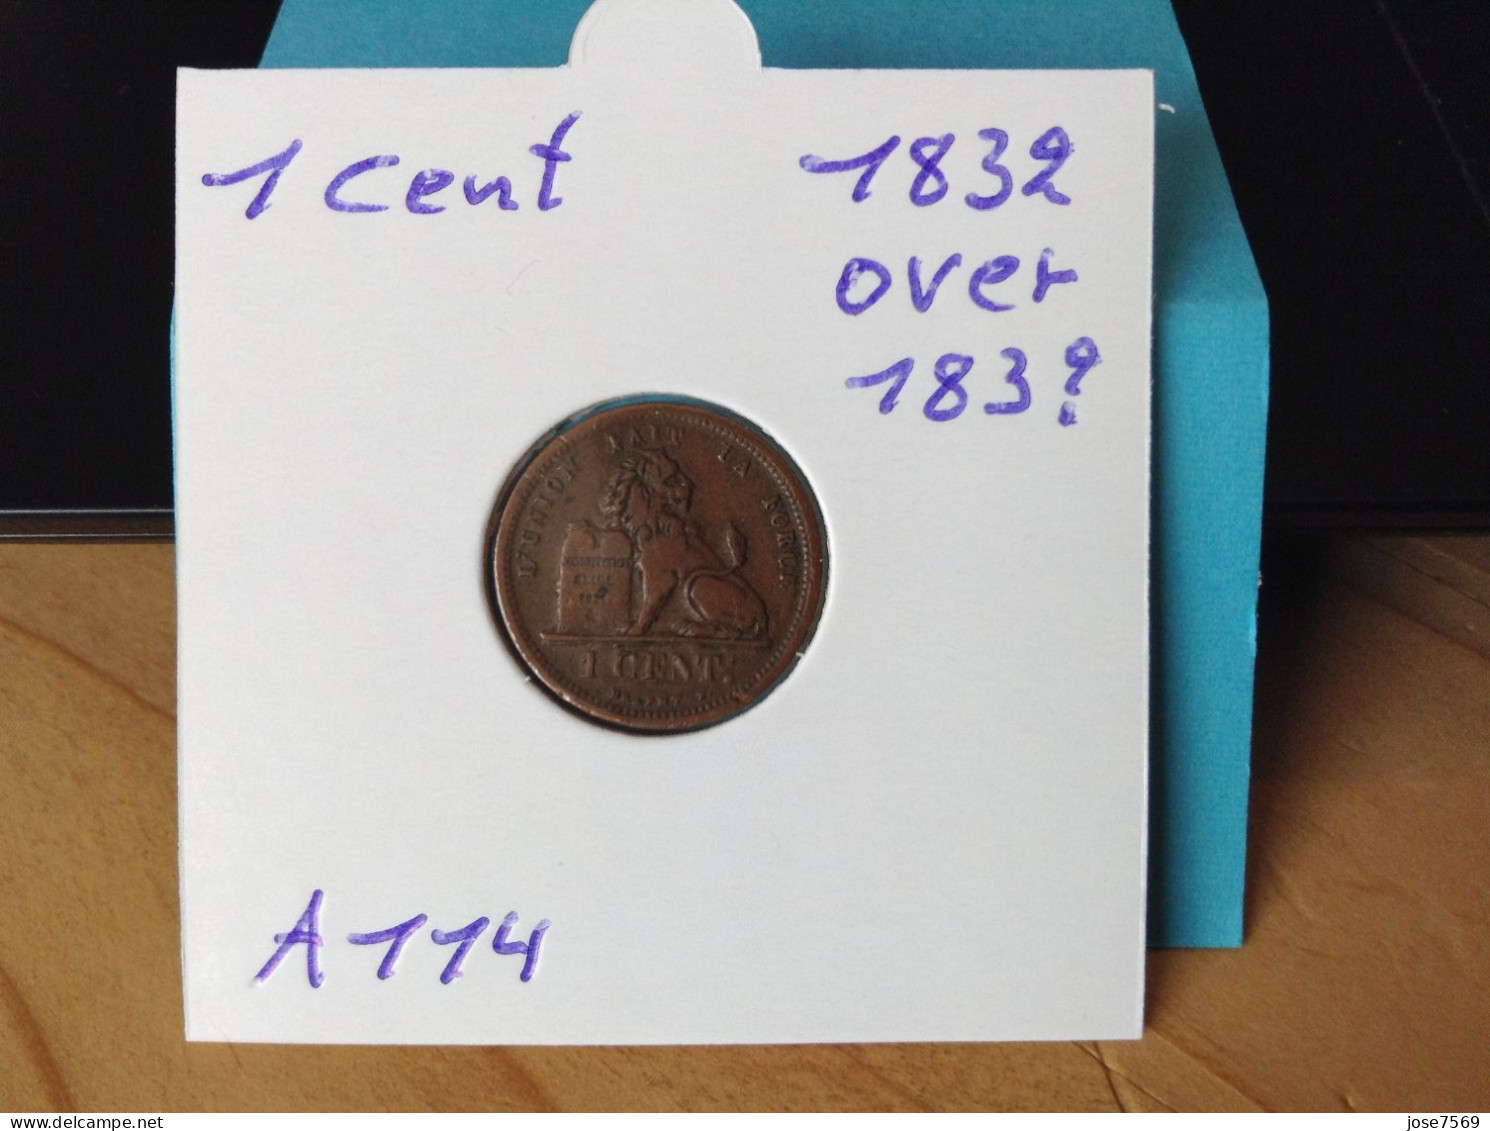 België Leopold I 1 Cent 1832 Over 183?. (Morin A114) - 1 Cent